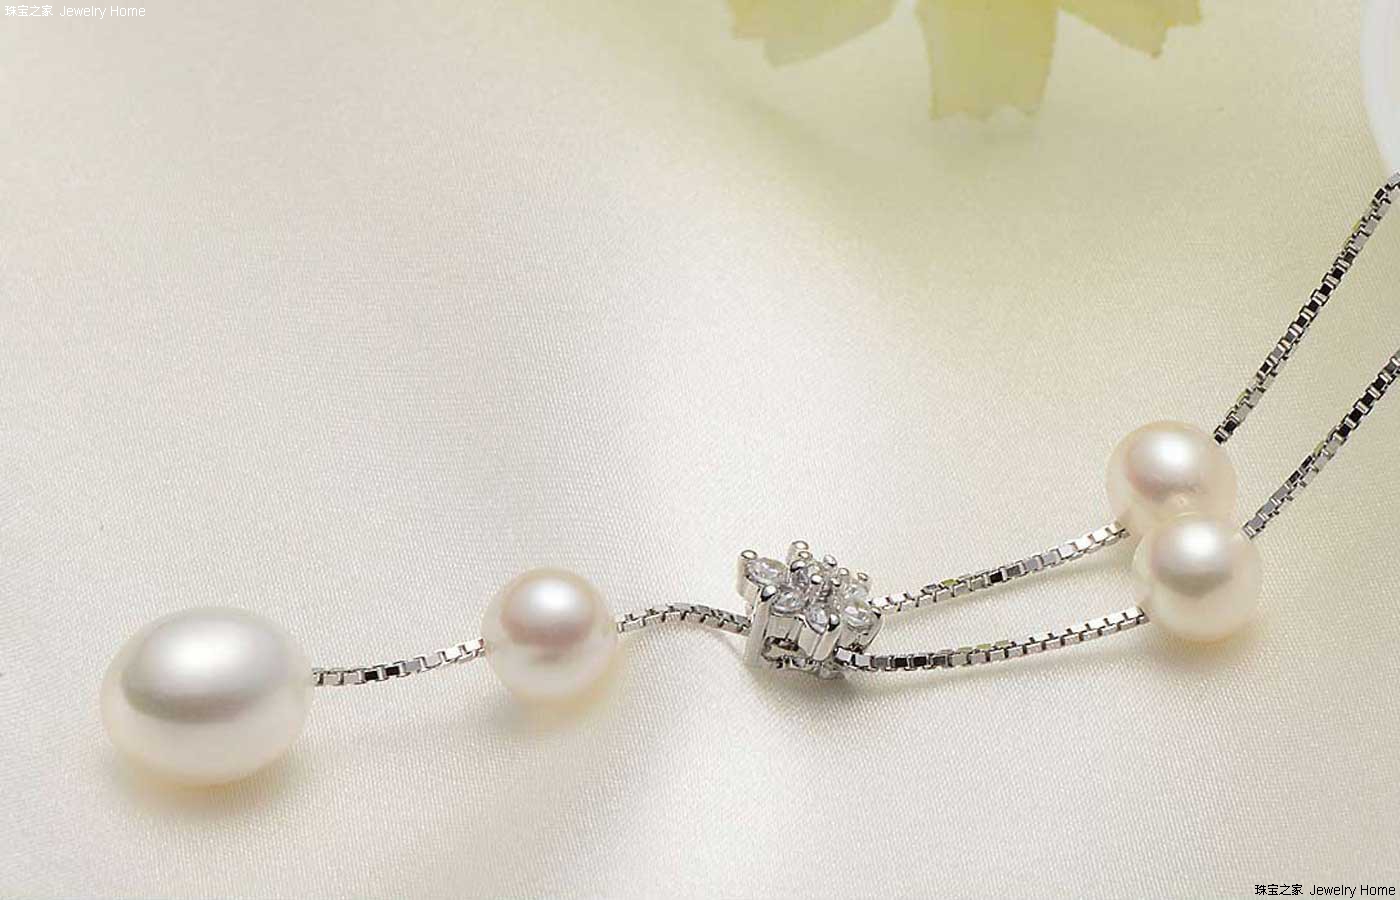 京润珍珠(gN pearl)简介 京润珍珠是什么品牌